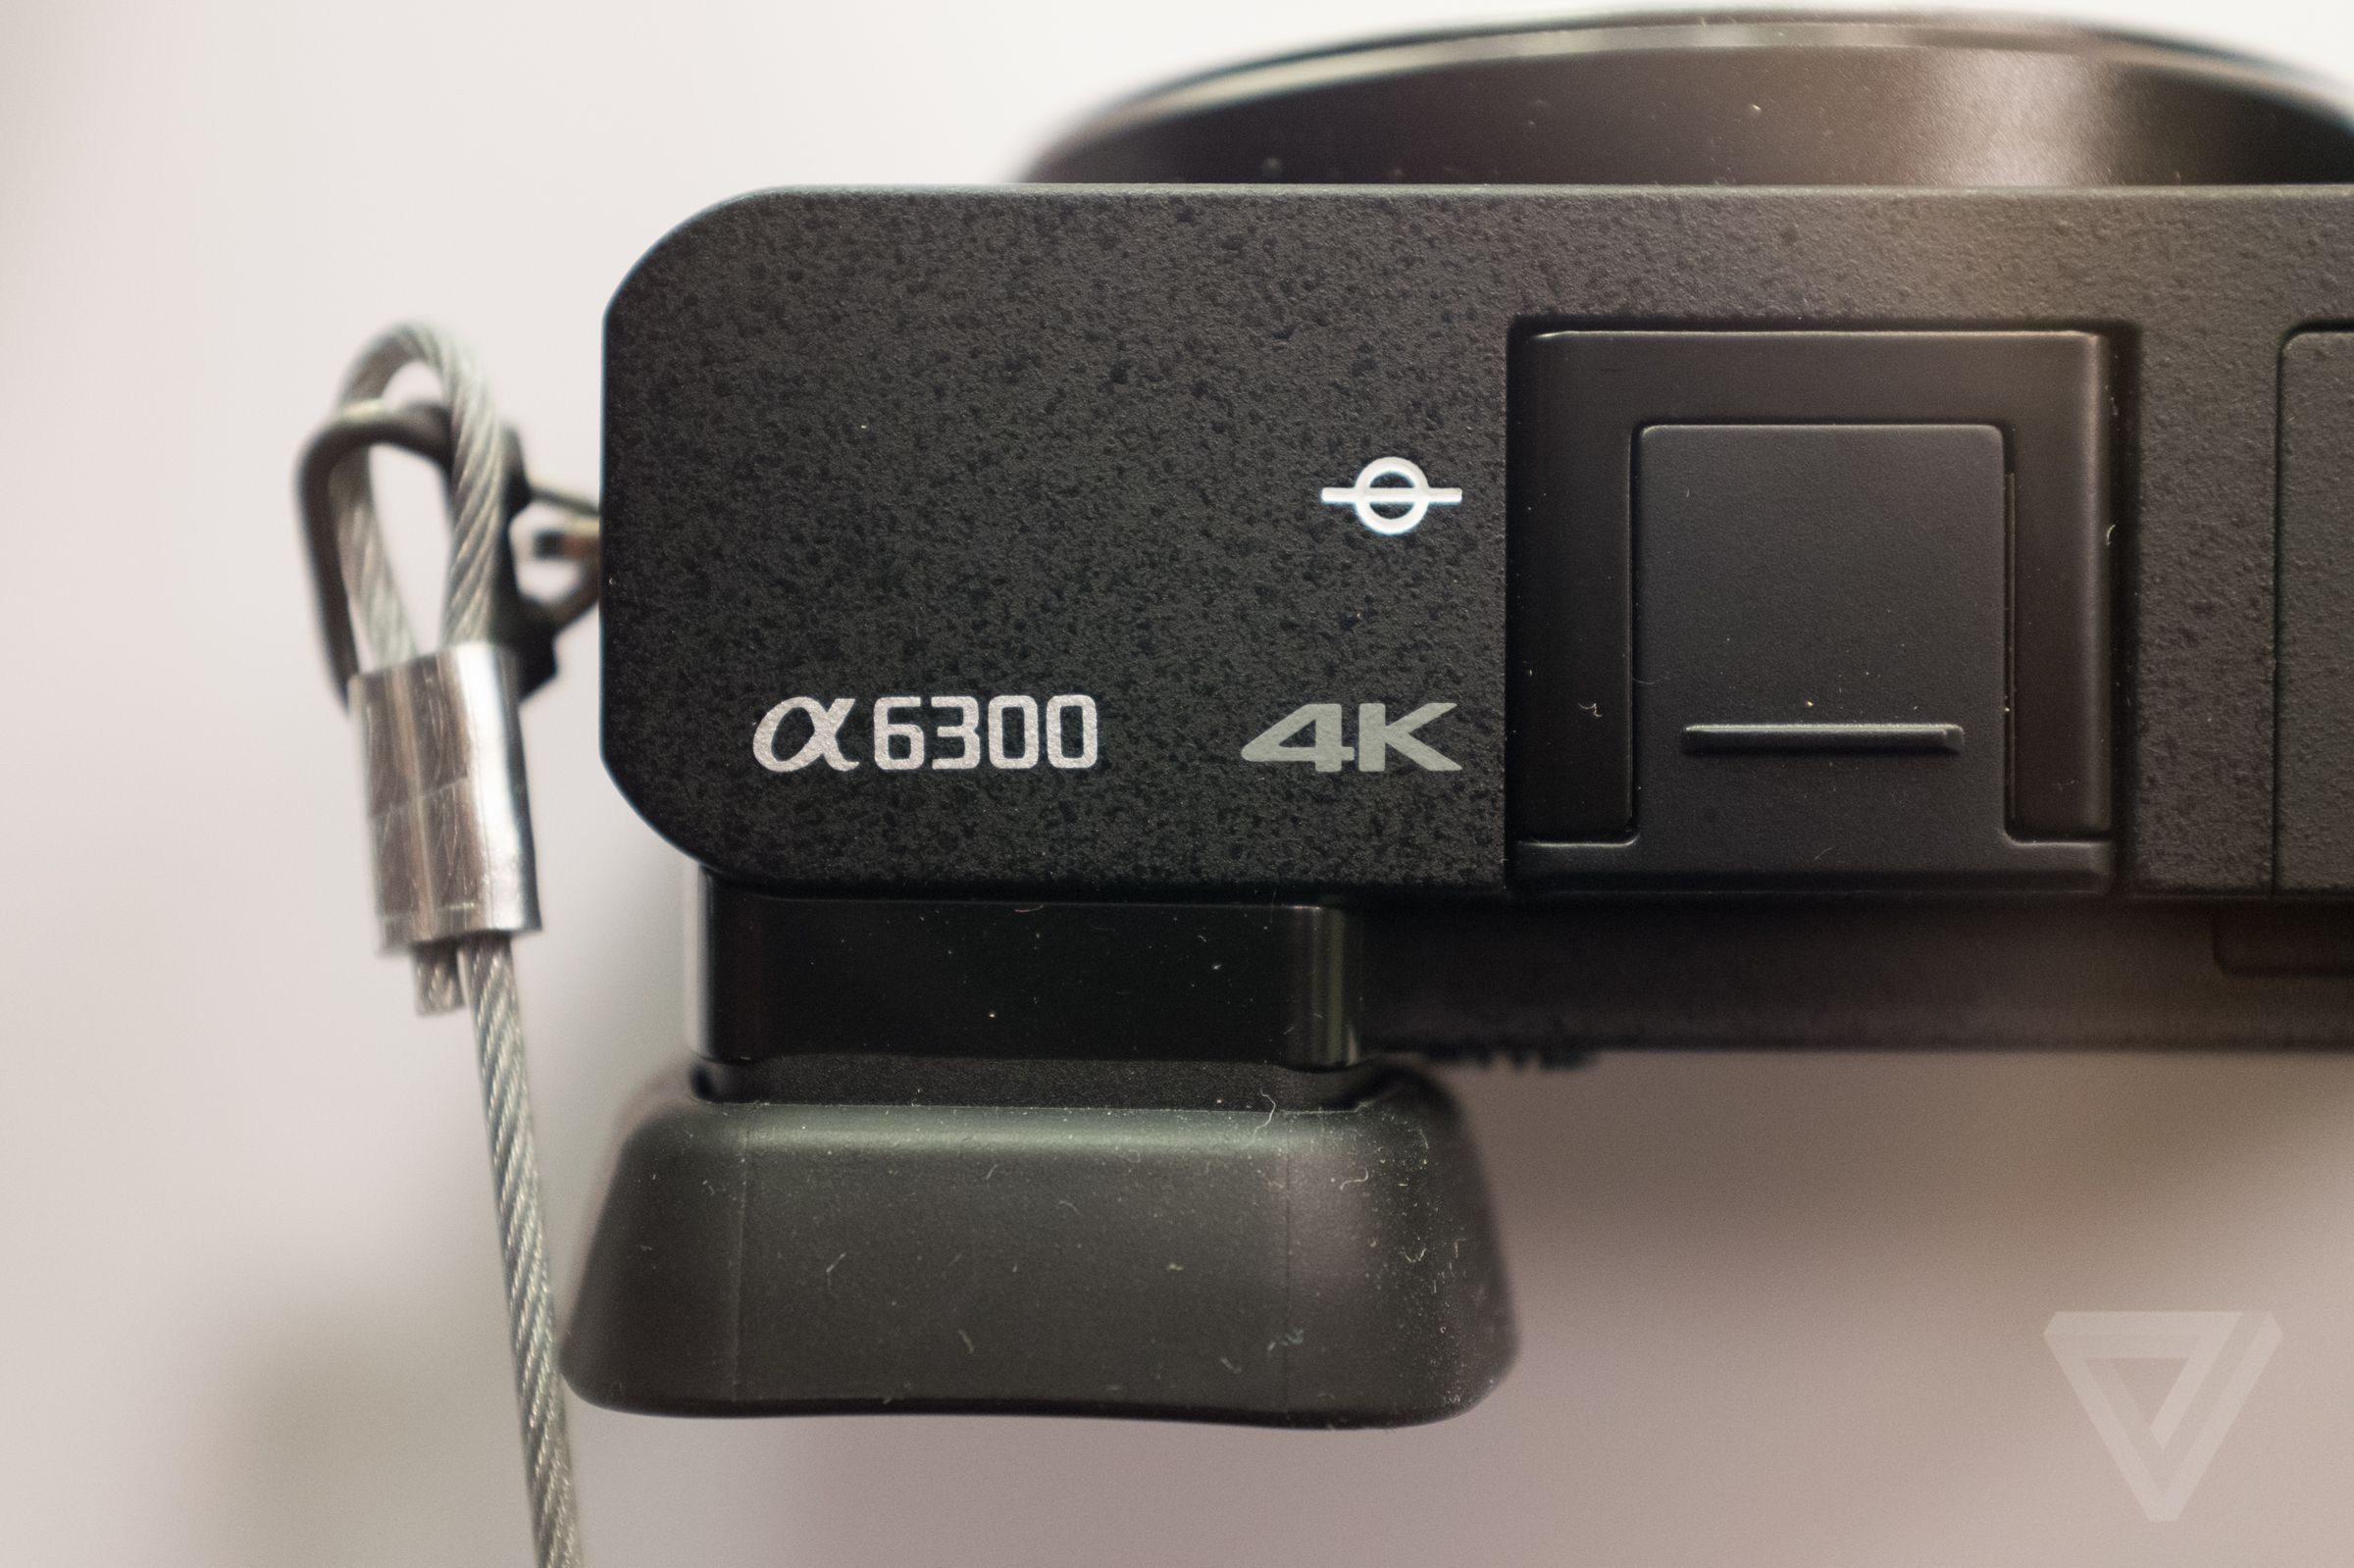 Sony A6300 hands-on photos